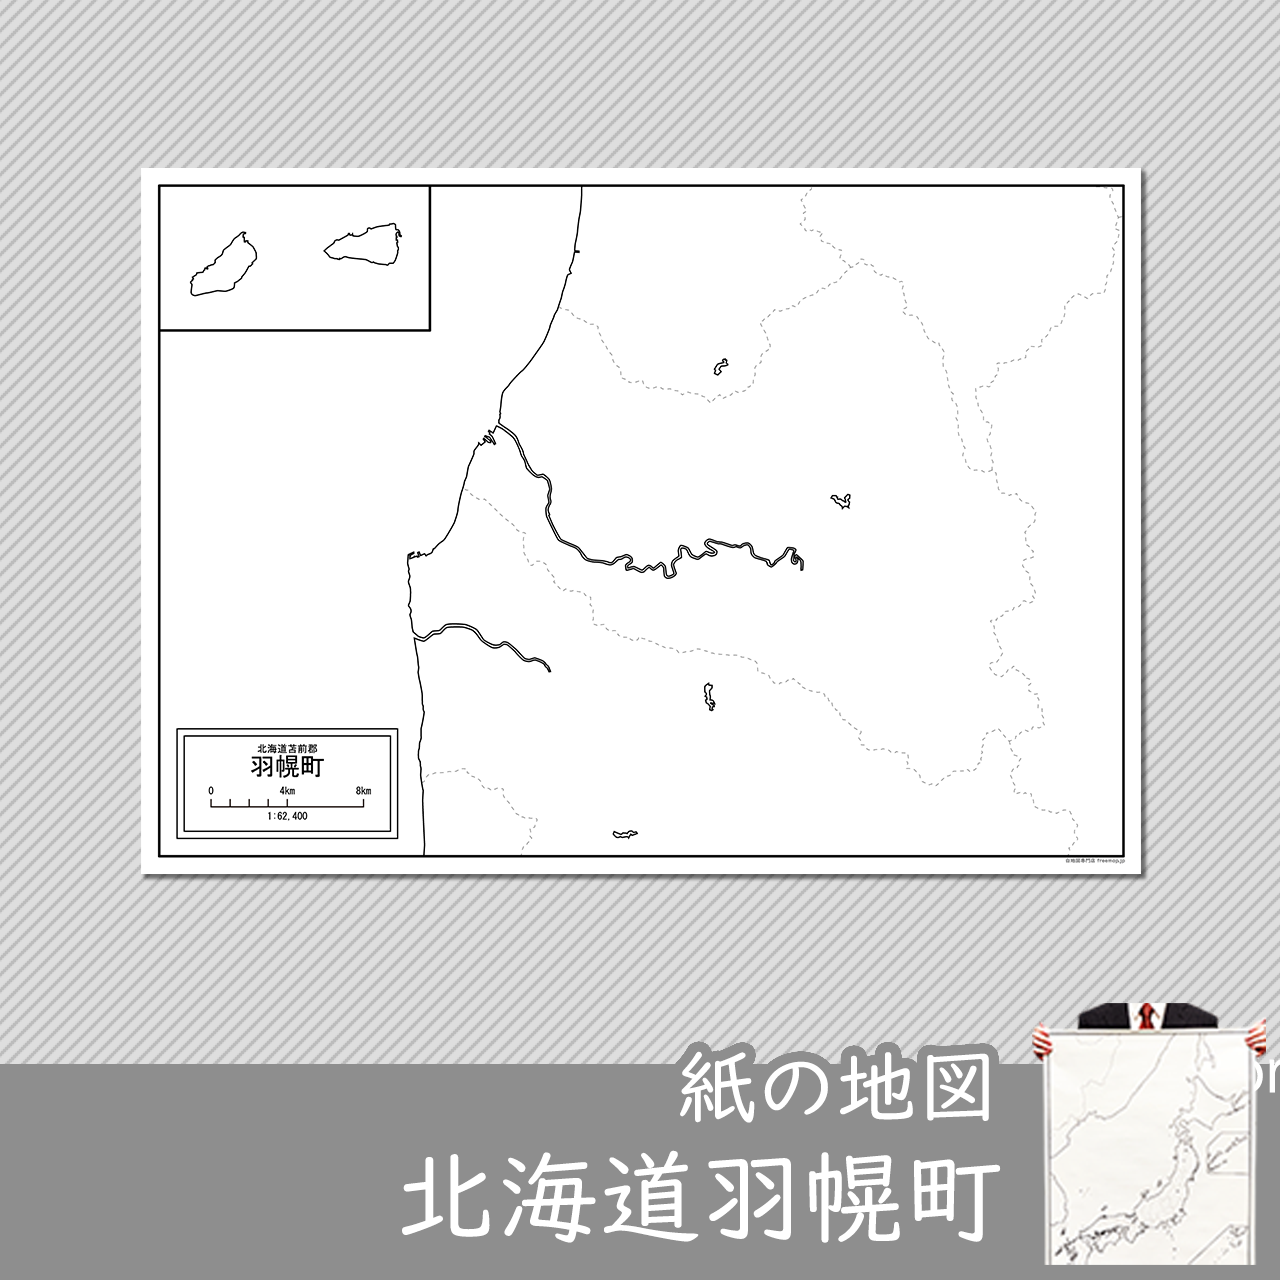 羽幌町の紙の白地図のサムネイル